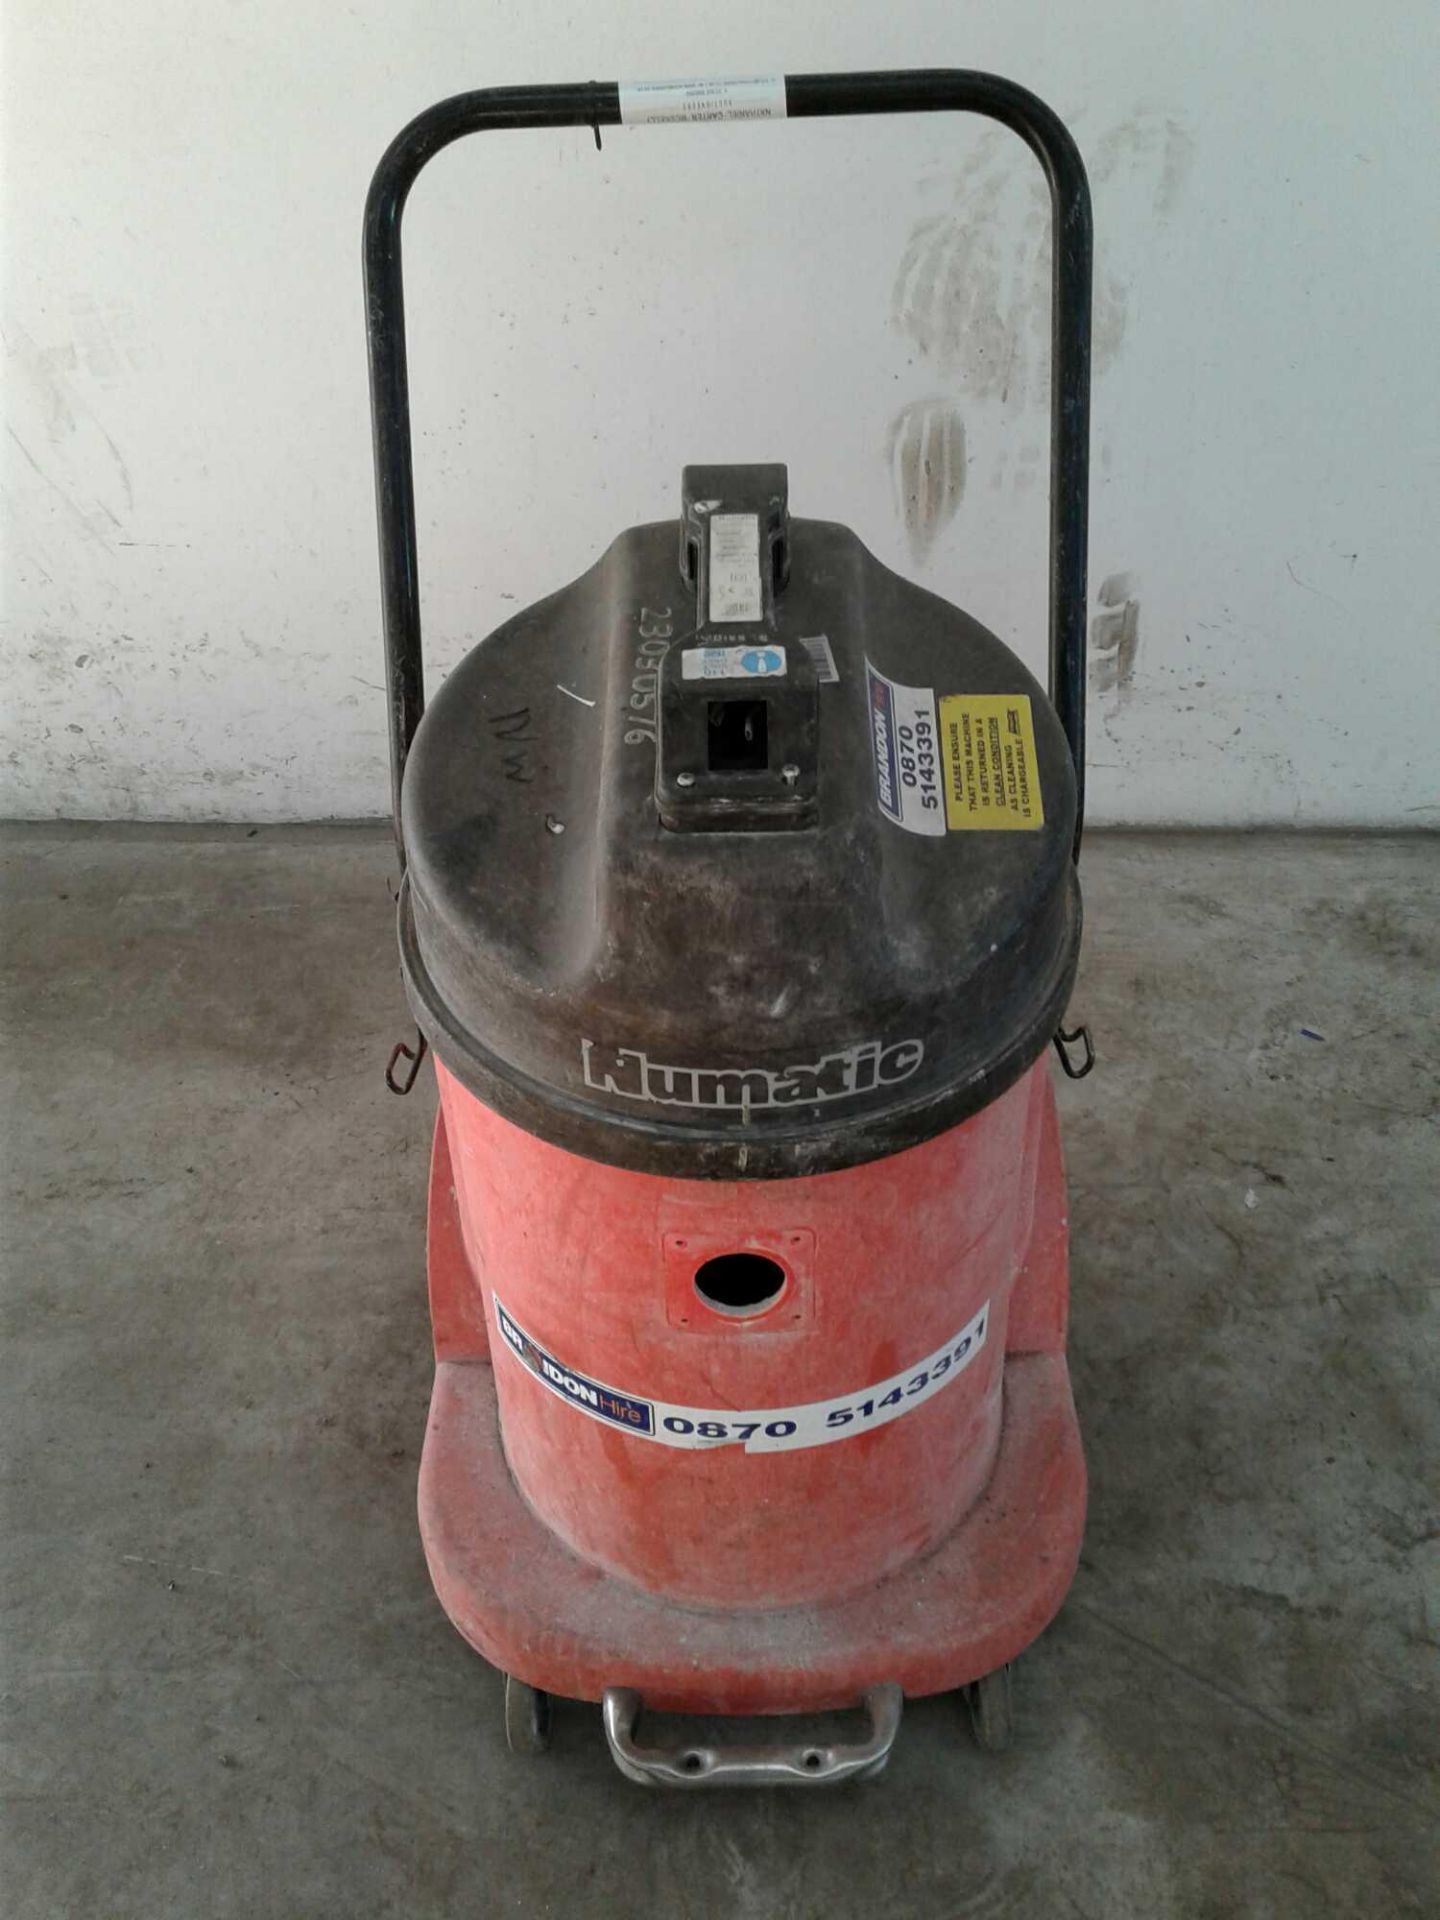 Numatic industrial vacuum cleaner 110v